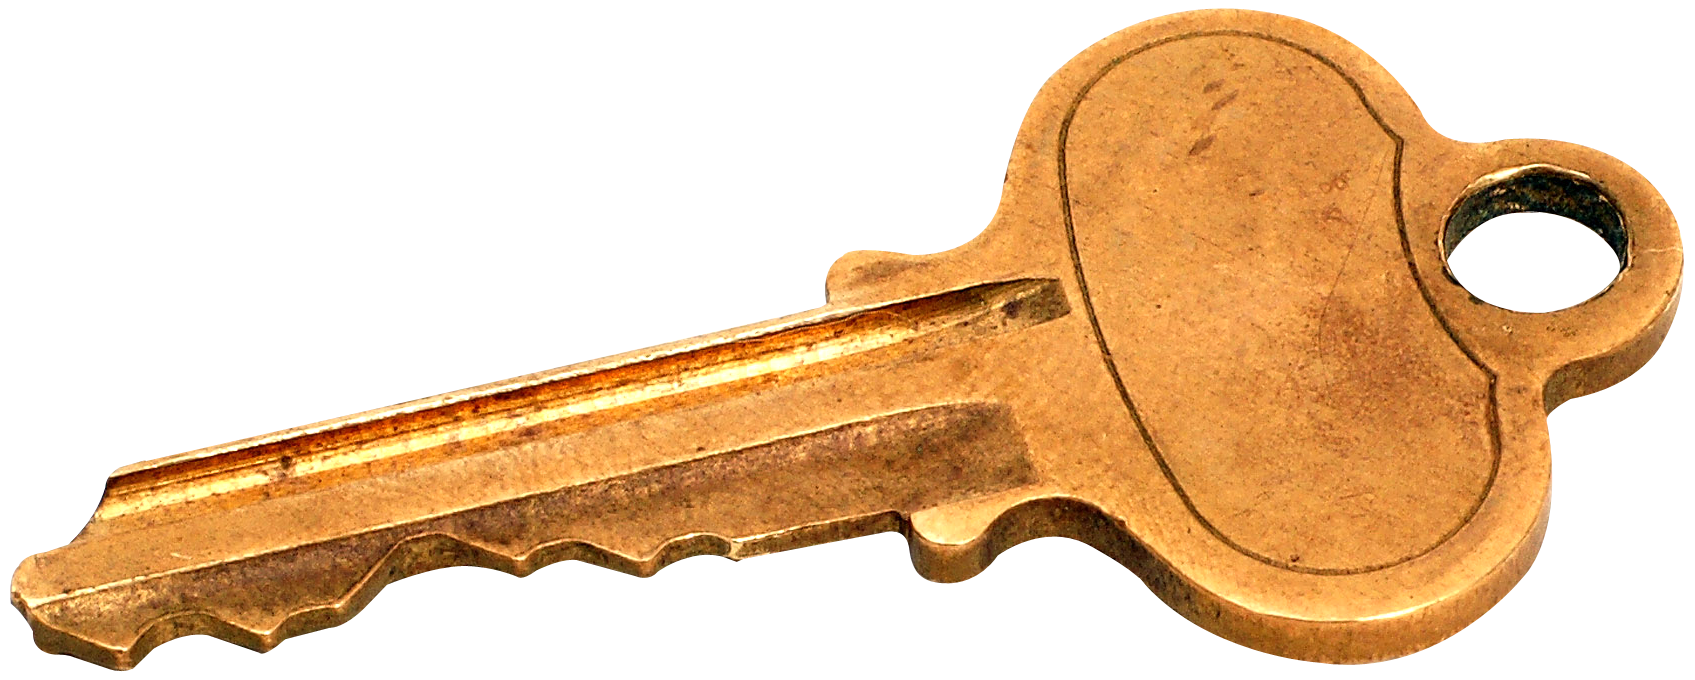 Key PNG Image